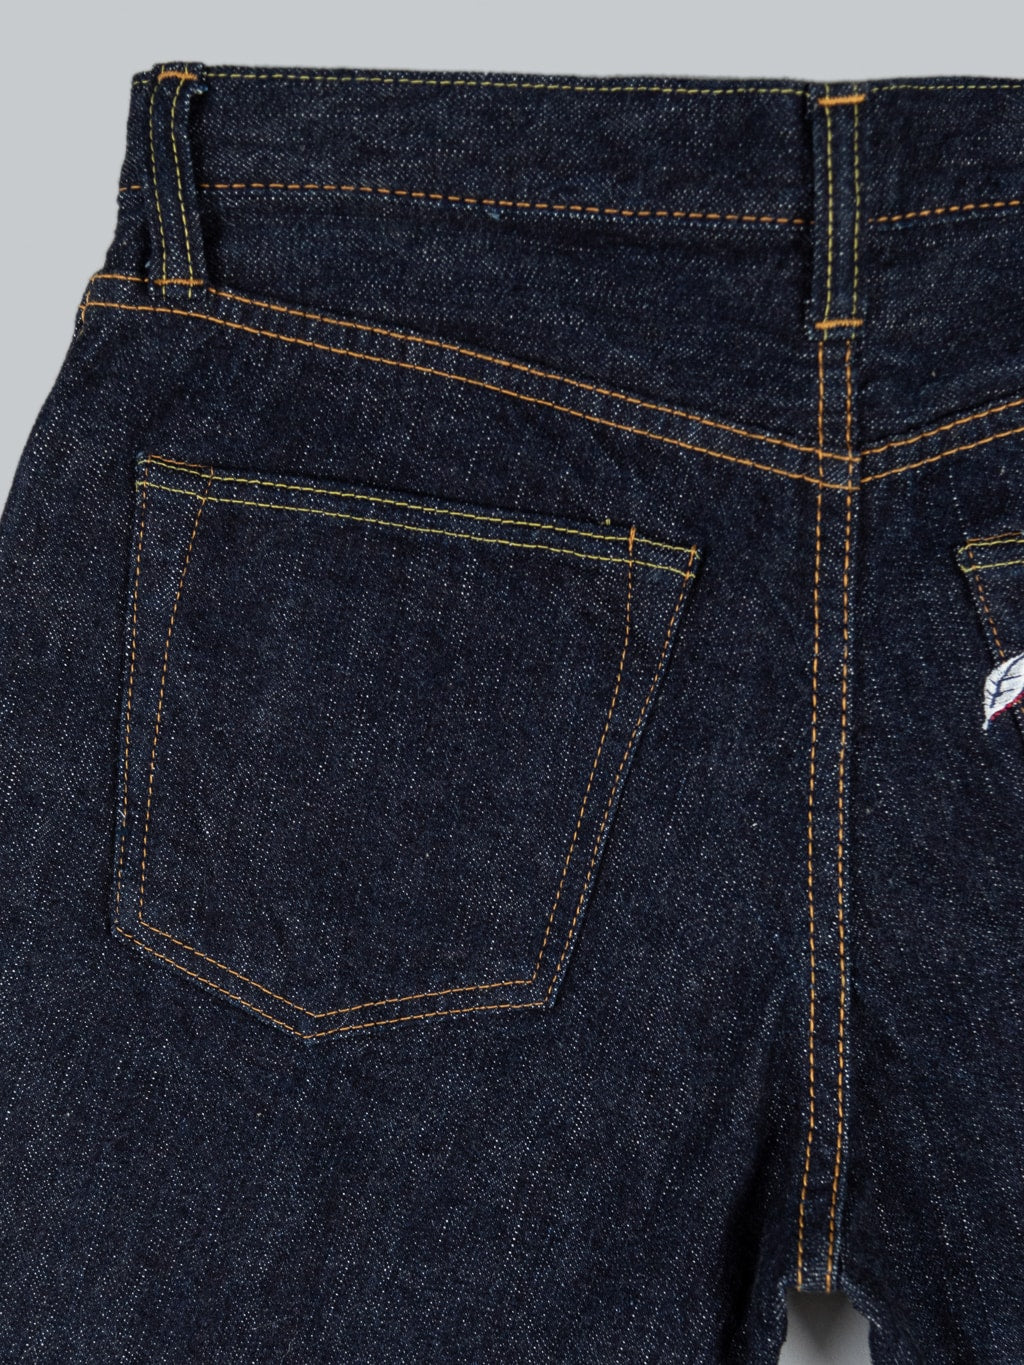 Pure Blue Japan XX 003 Regular Straight Jeans back pocket details